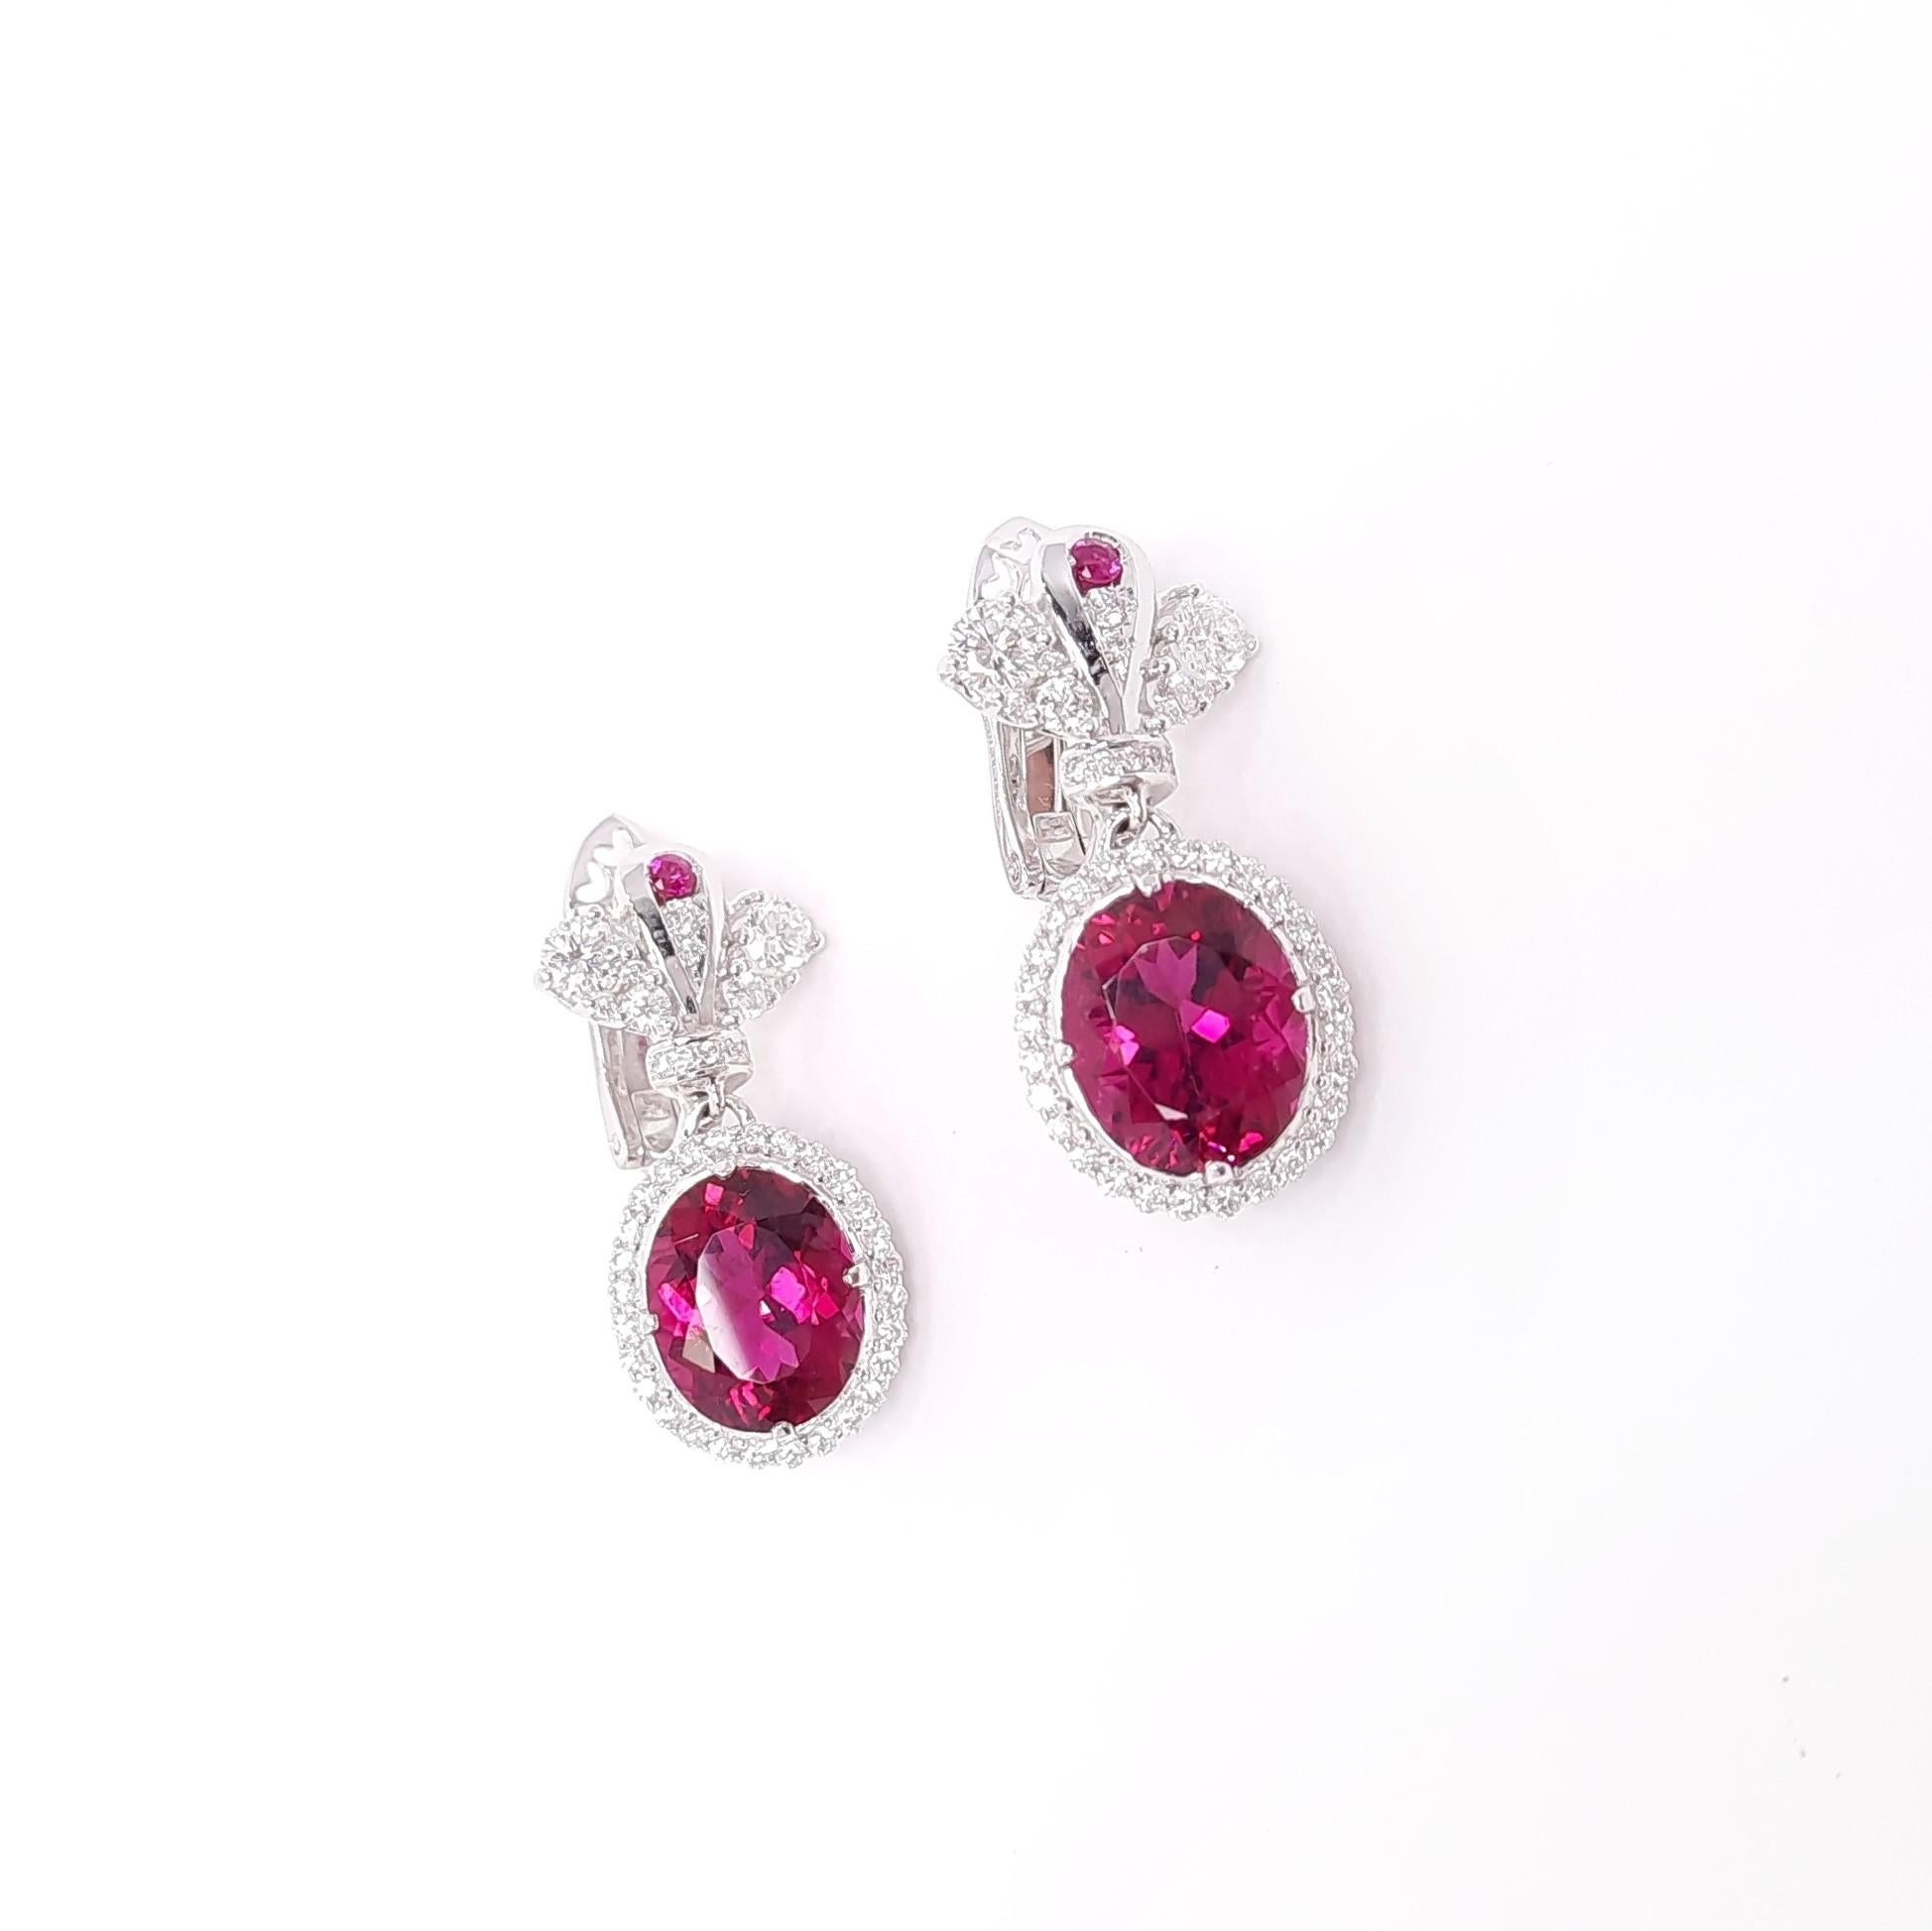 Die eleganten und klassischen Ohrringe aus Diamanten und lebhaften Rubellit-Turmalinen sind von der prächtigen russischen und europäischen Epoche inspiriert. Dediziert der kaiserlichen Größe, dem Luxus, der Schönheit und dem edlen Streben, werden